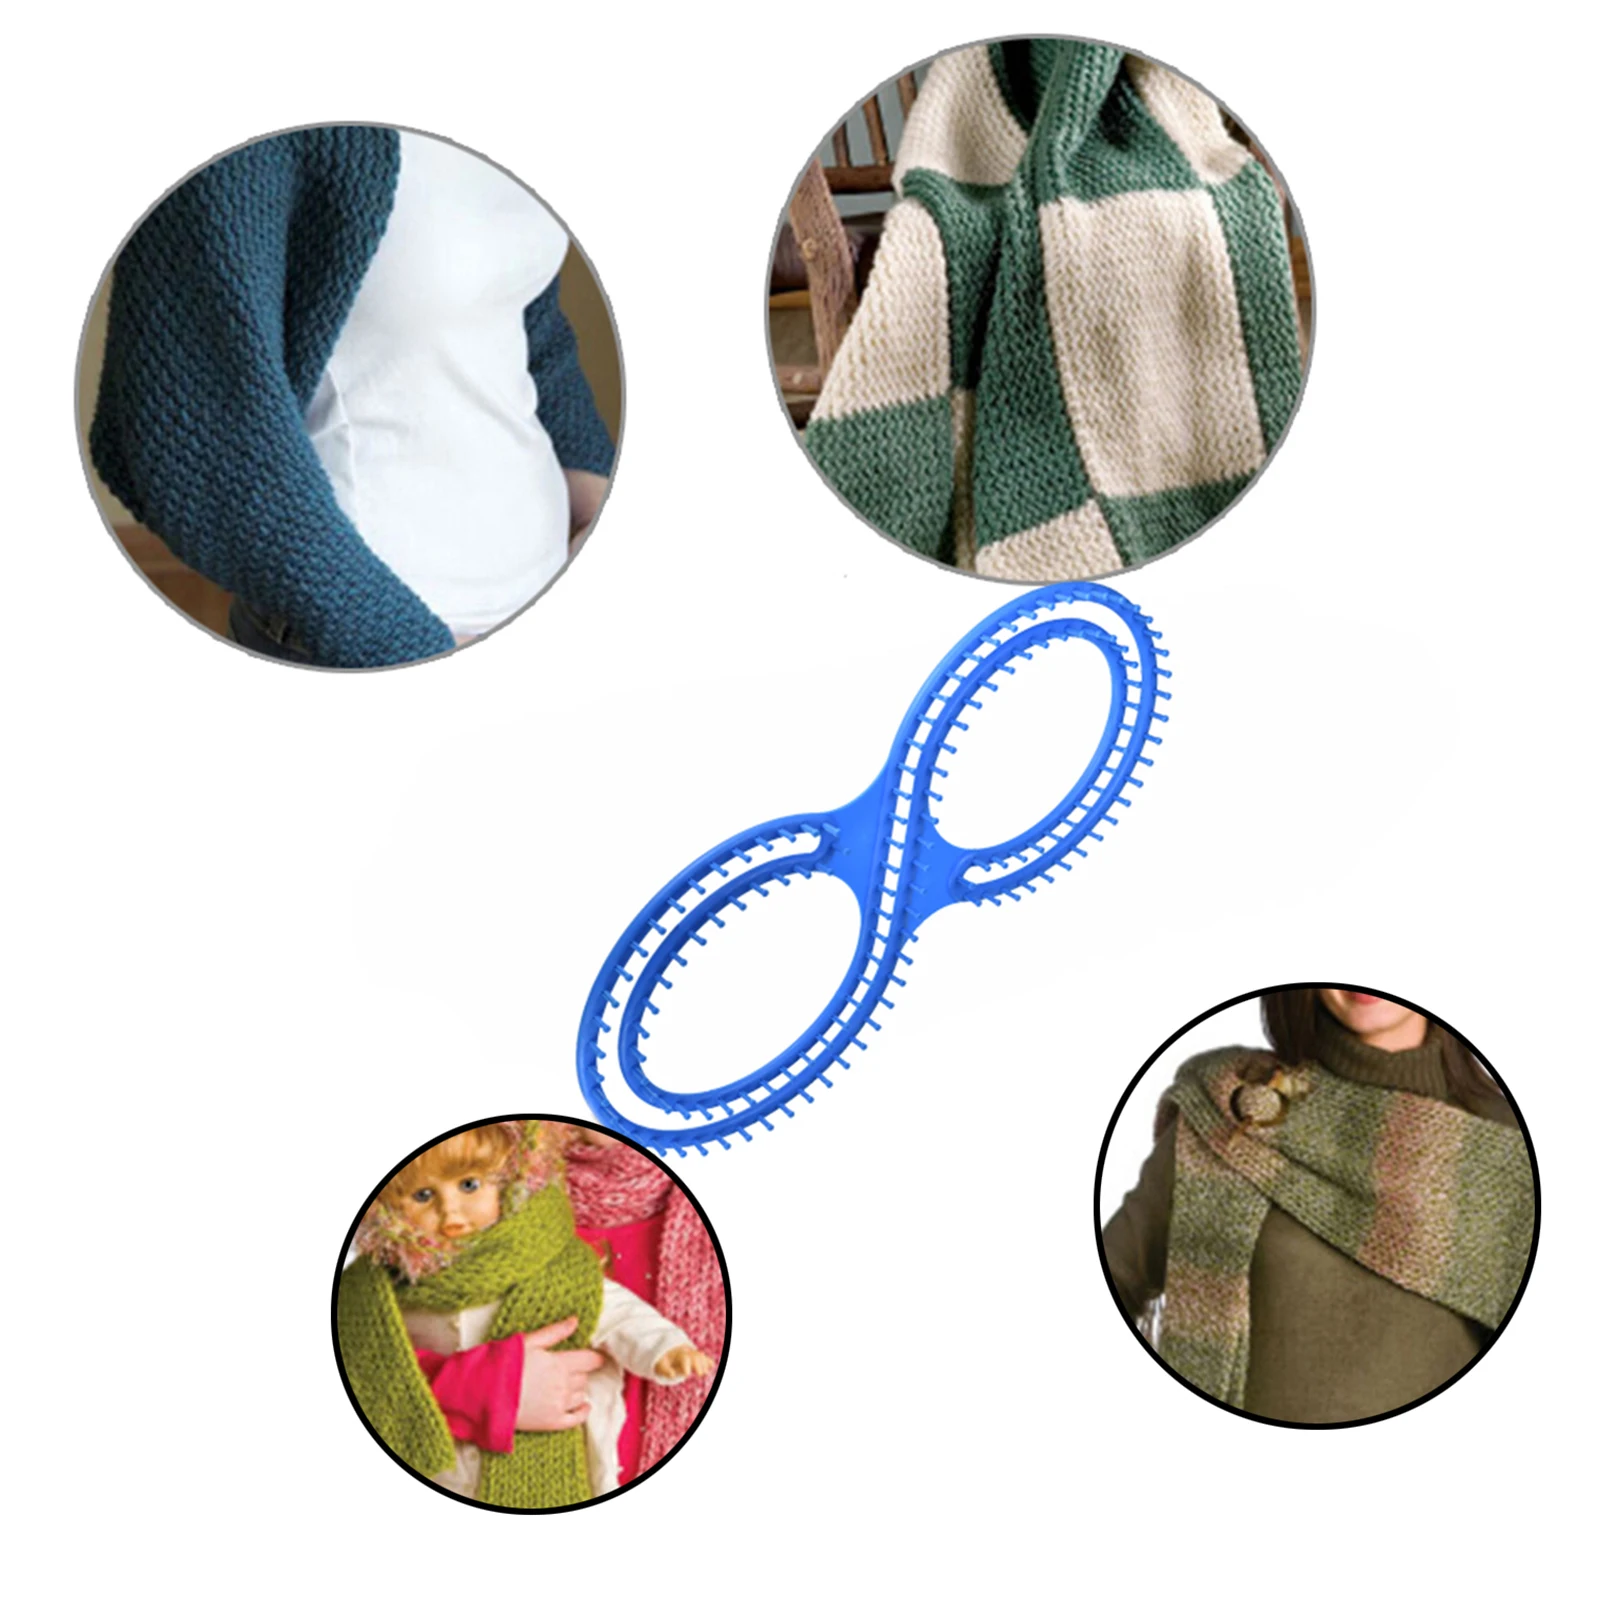 

Афганский ткацкий станок, вязальная доска, инструмент с 3 проектами для свитеров, носков, бытовой набор аксессуаров для рукоделия